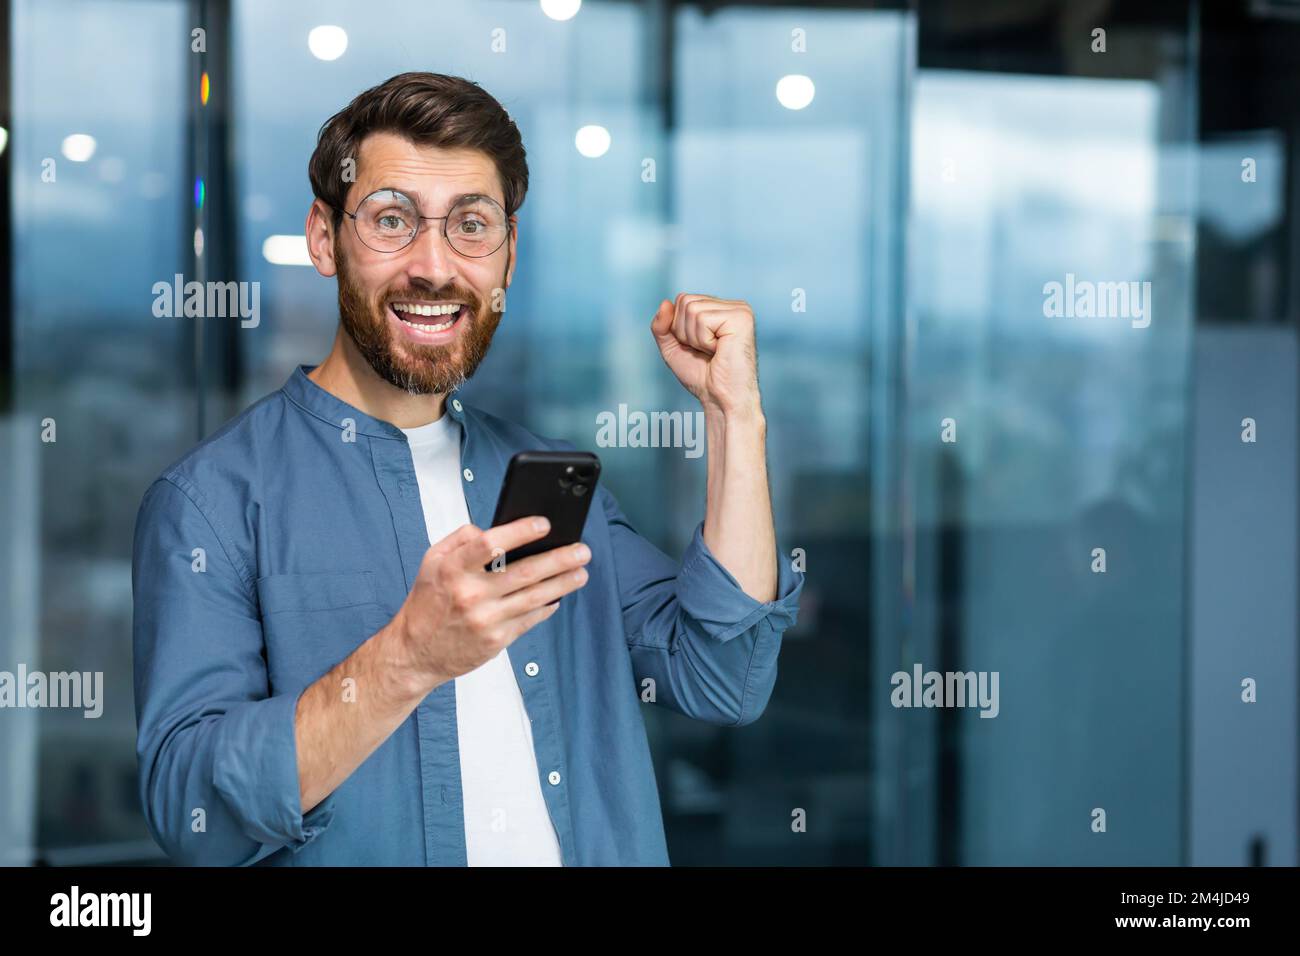 Porträt eines modernen Geschäftsmannes mitten im Büro, der Mann schaut mit einem Smartphone in die Kamera und feiert den Sieg, der Mann hält das Telefon in den Händen und hebt seine Hand in einer Geste des Triumphes. Stockfoto